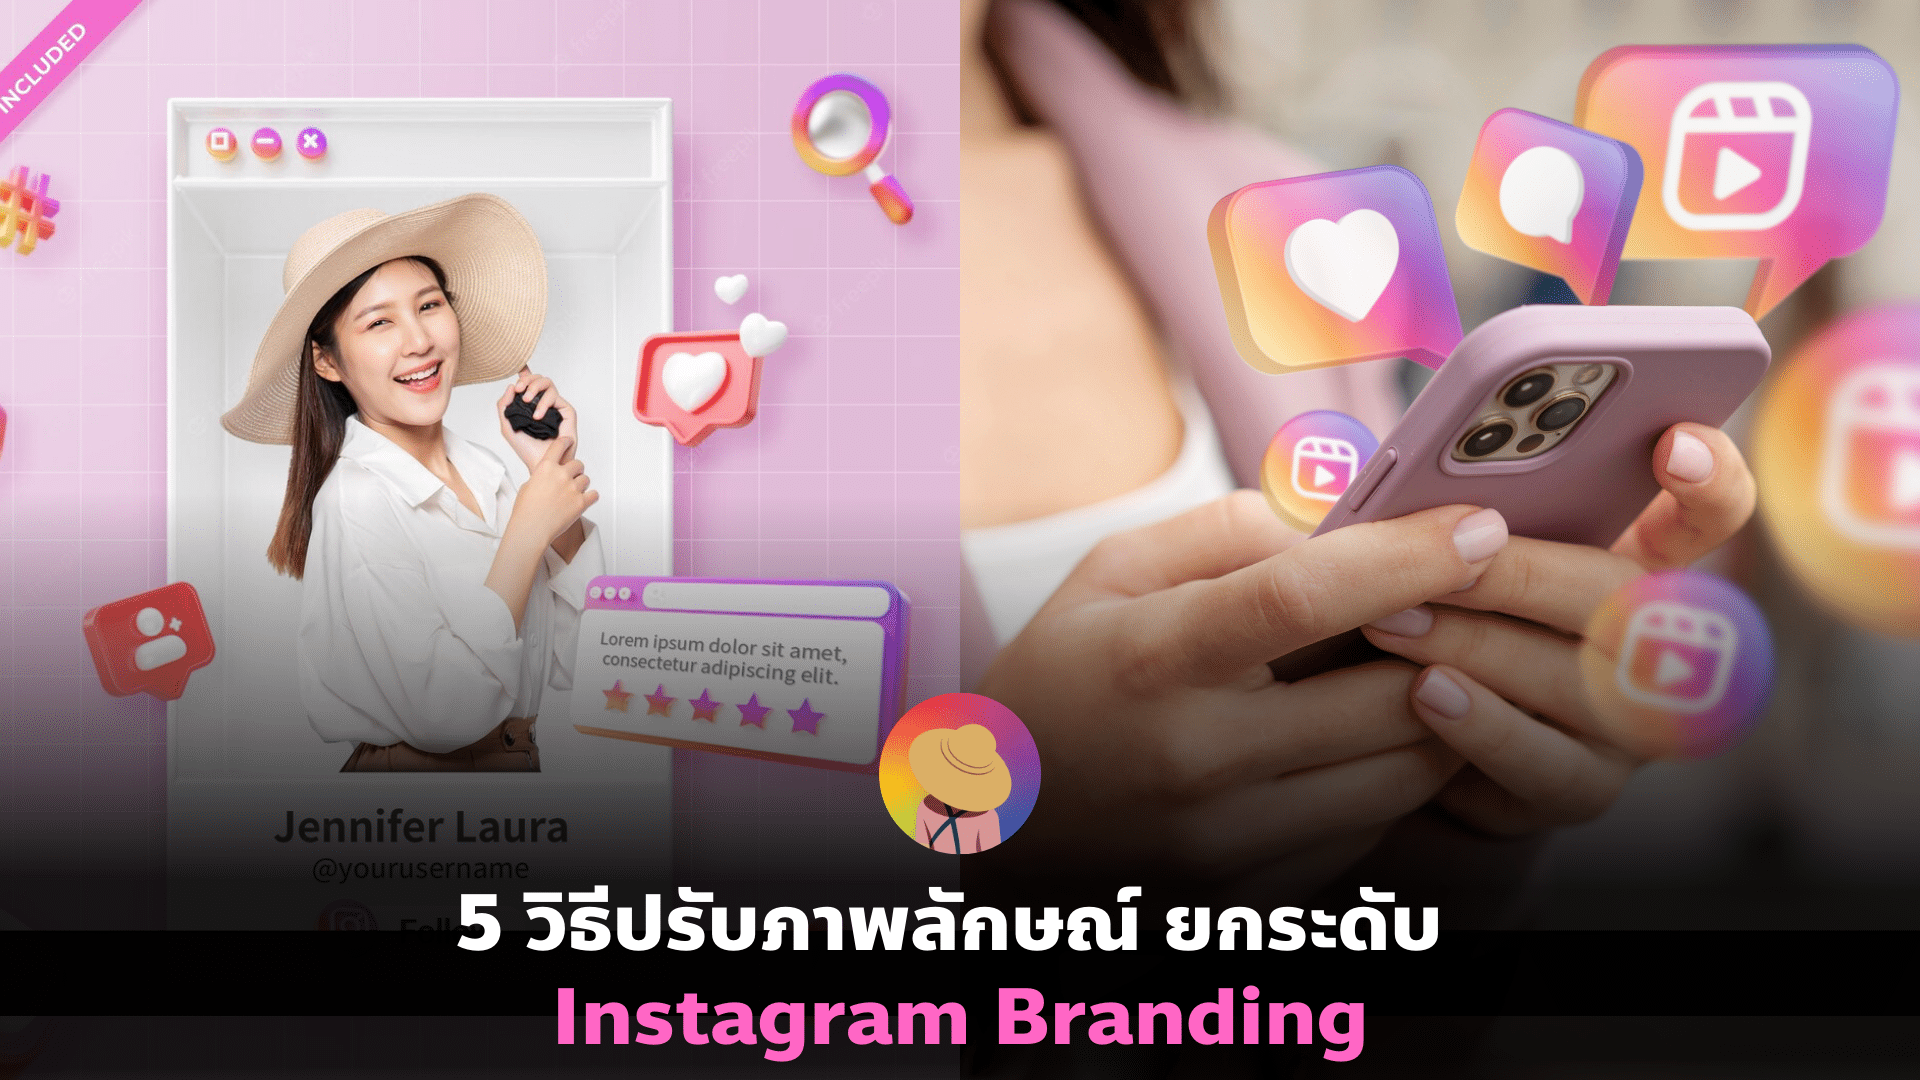 5 วิธีปรับภาพลักษณ์ ยกระดับ Instagram Branding